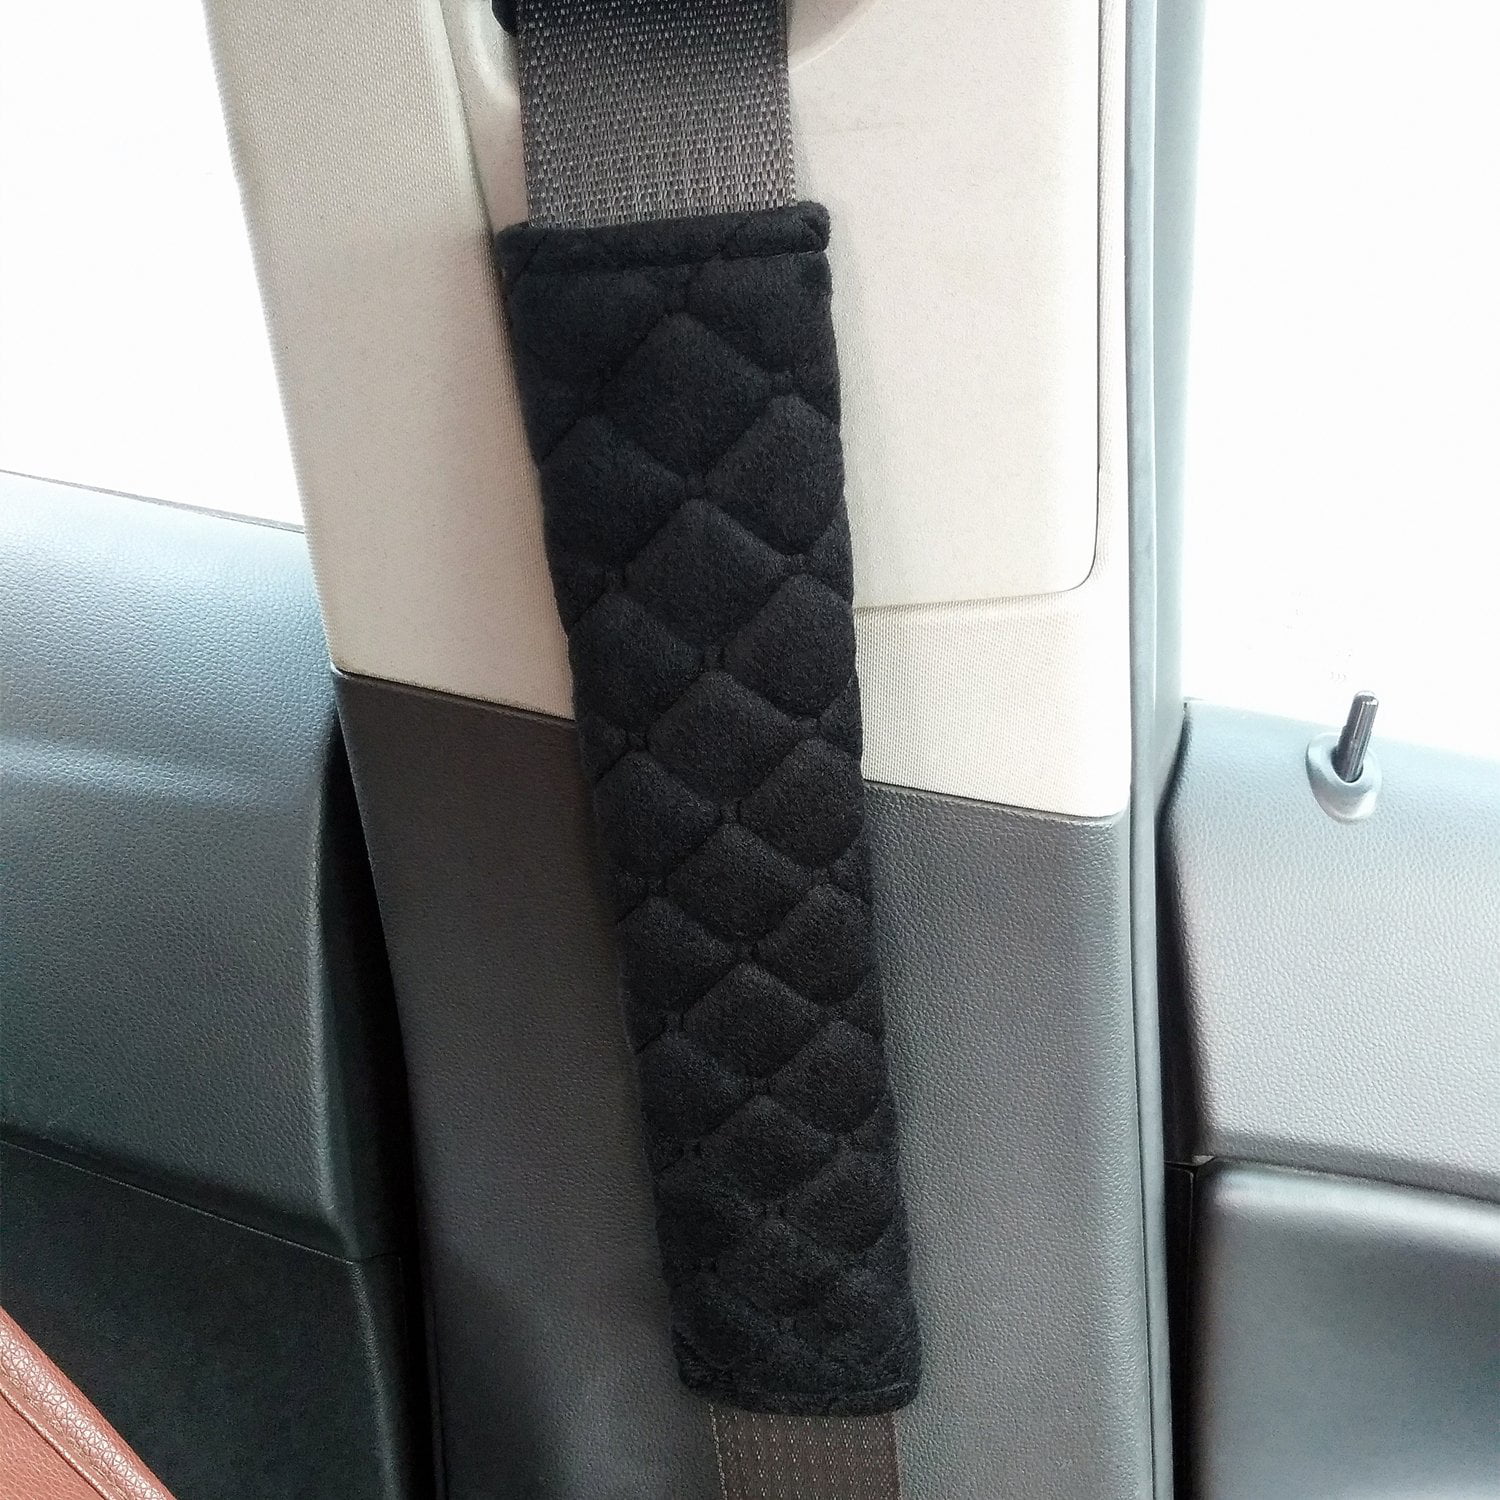 YUNONG 2Pack Emblem Car Logo Seat Belt Cover Carbon Fiber Shoulder Protector Pad Car Strap Seatbelt Cover Neck Protector for Adult Children 